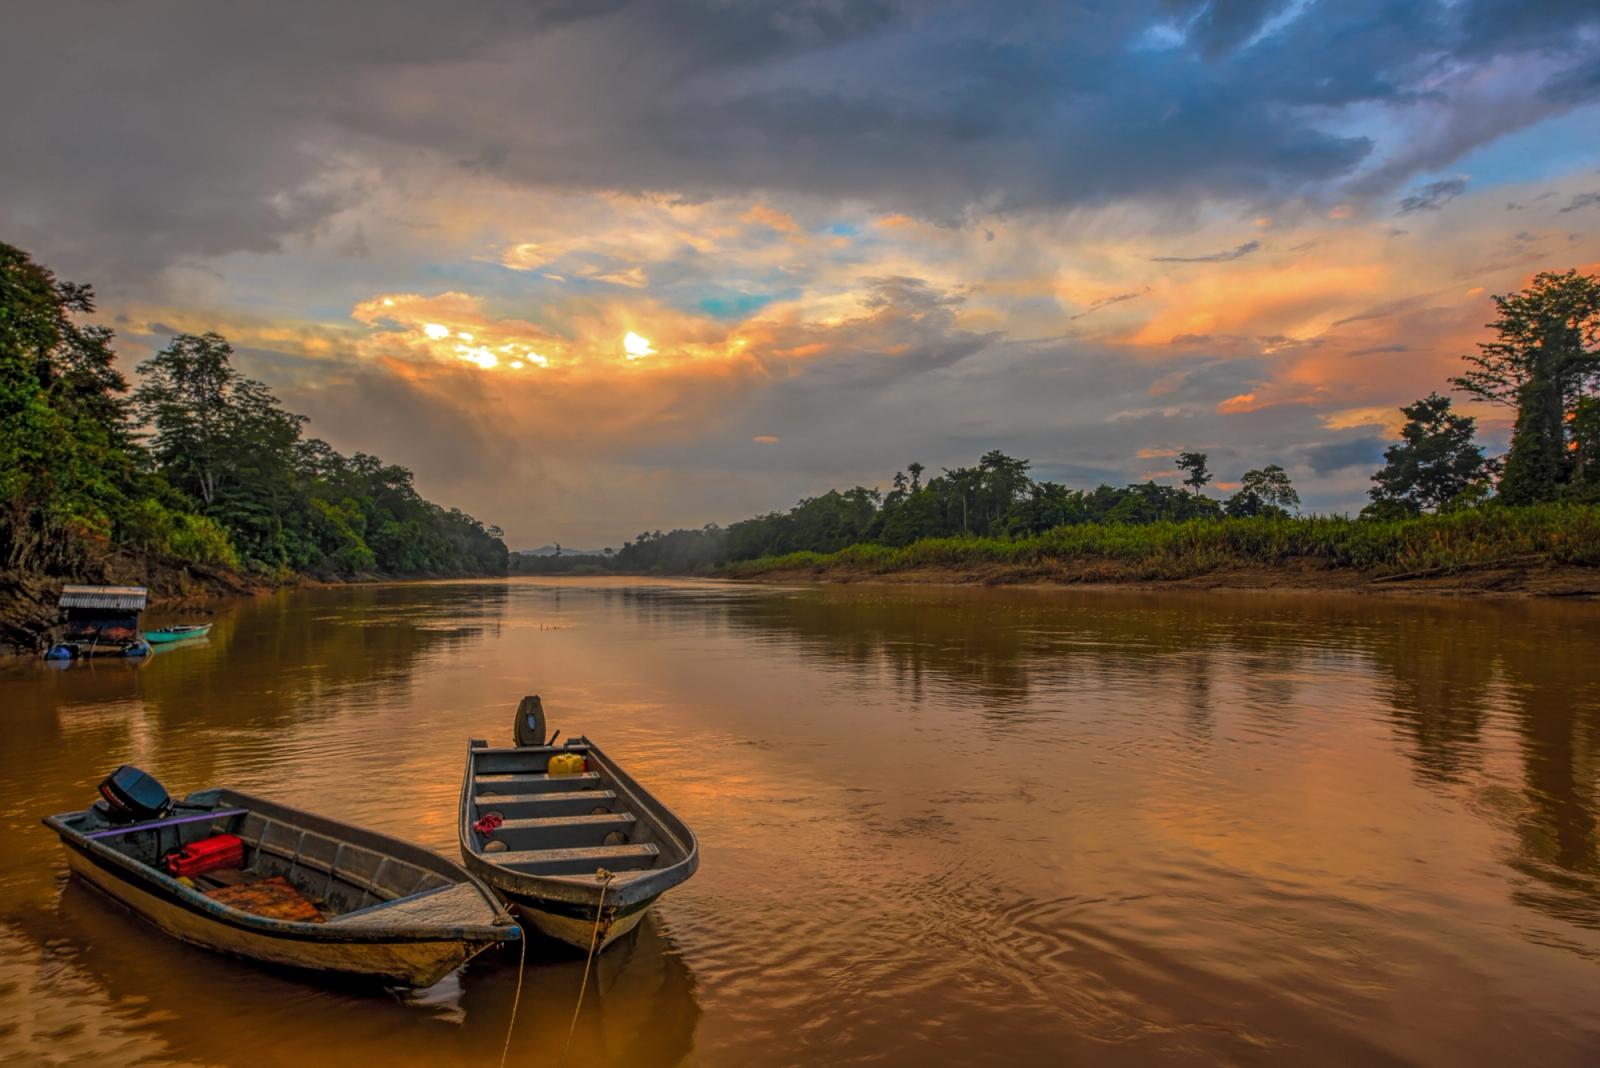 fiume e giungla del borneo malese